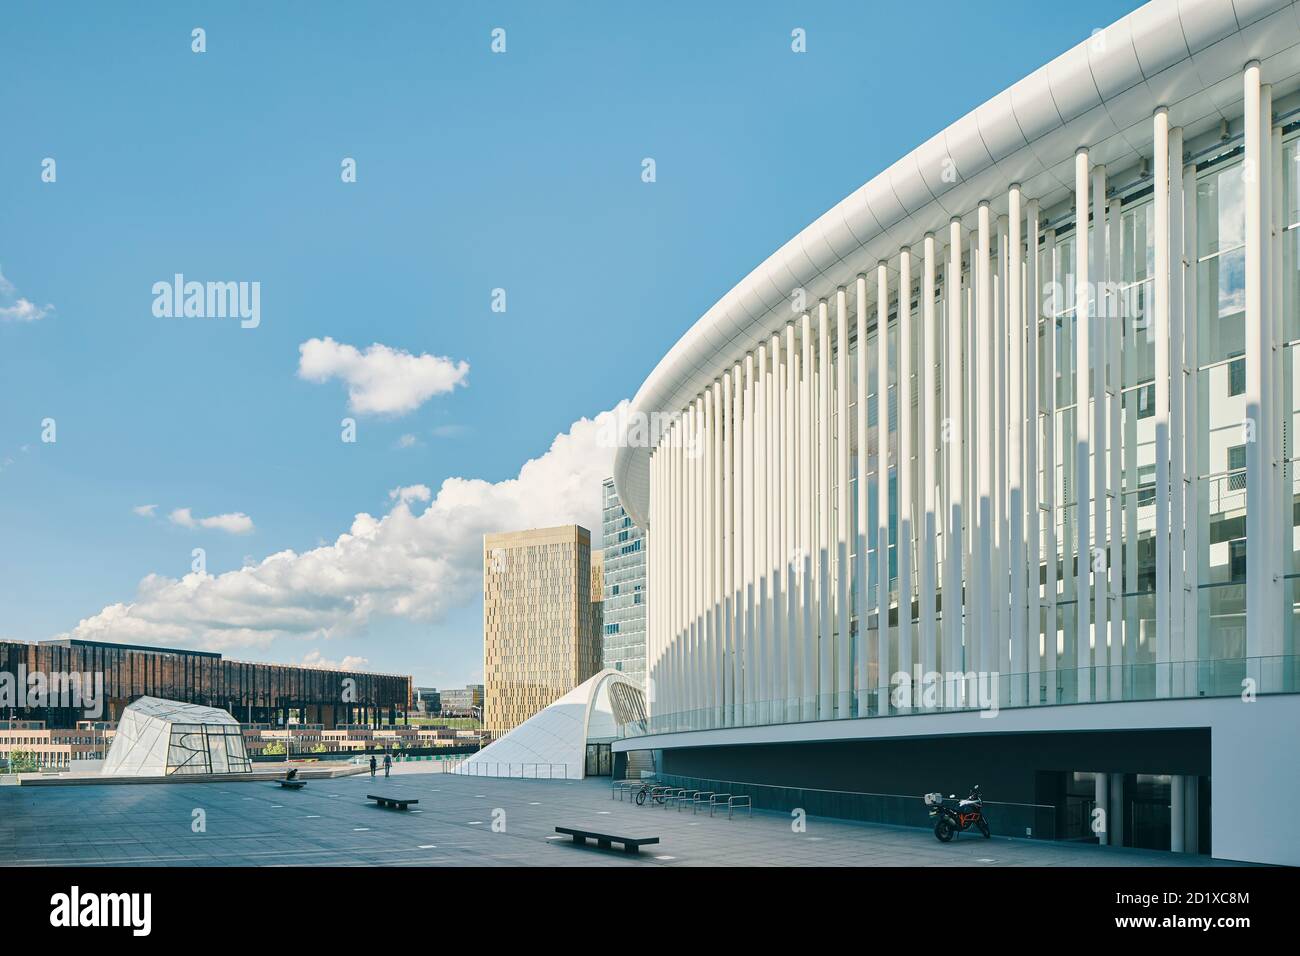 La Philharmonie nell'altopiano di Kirchberg, Lussemburgo, si trova al centro di una piazza triangolare circondata da uffici amministrativi dell'UE. E' composto da 823 sottili colonne di acciaio bianco, disposte su tre o quattro file. Completato nel 2005. Foto Stock